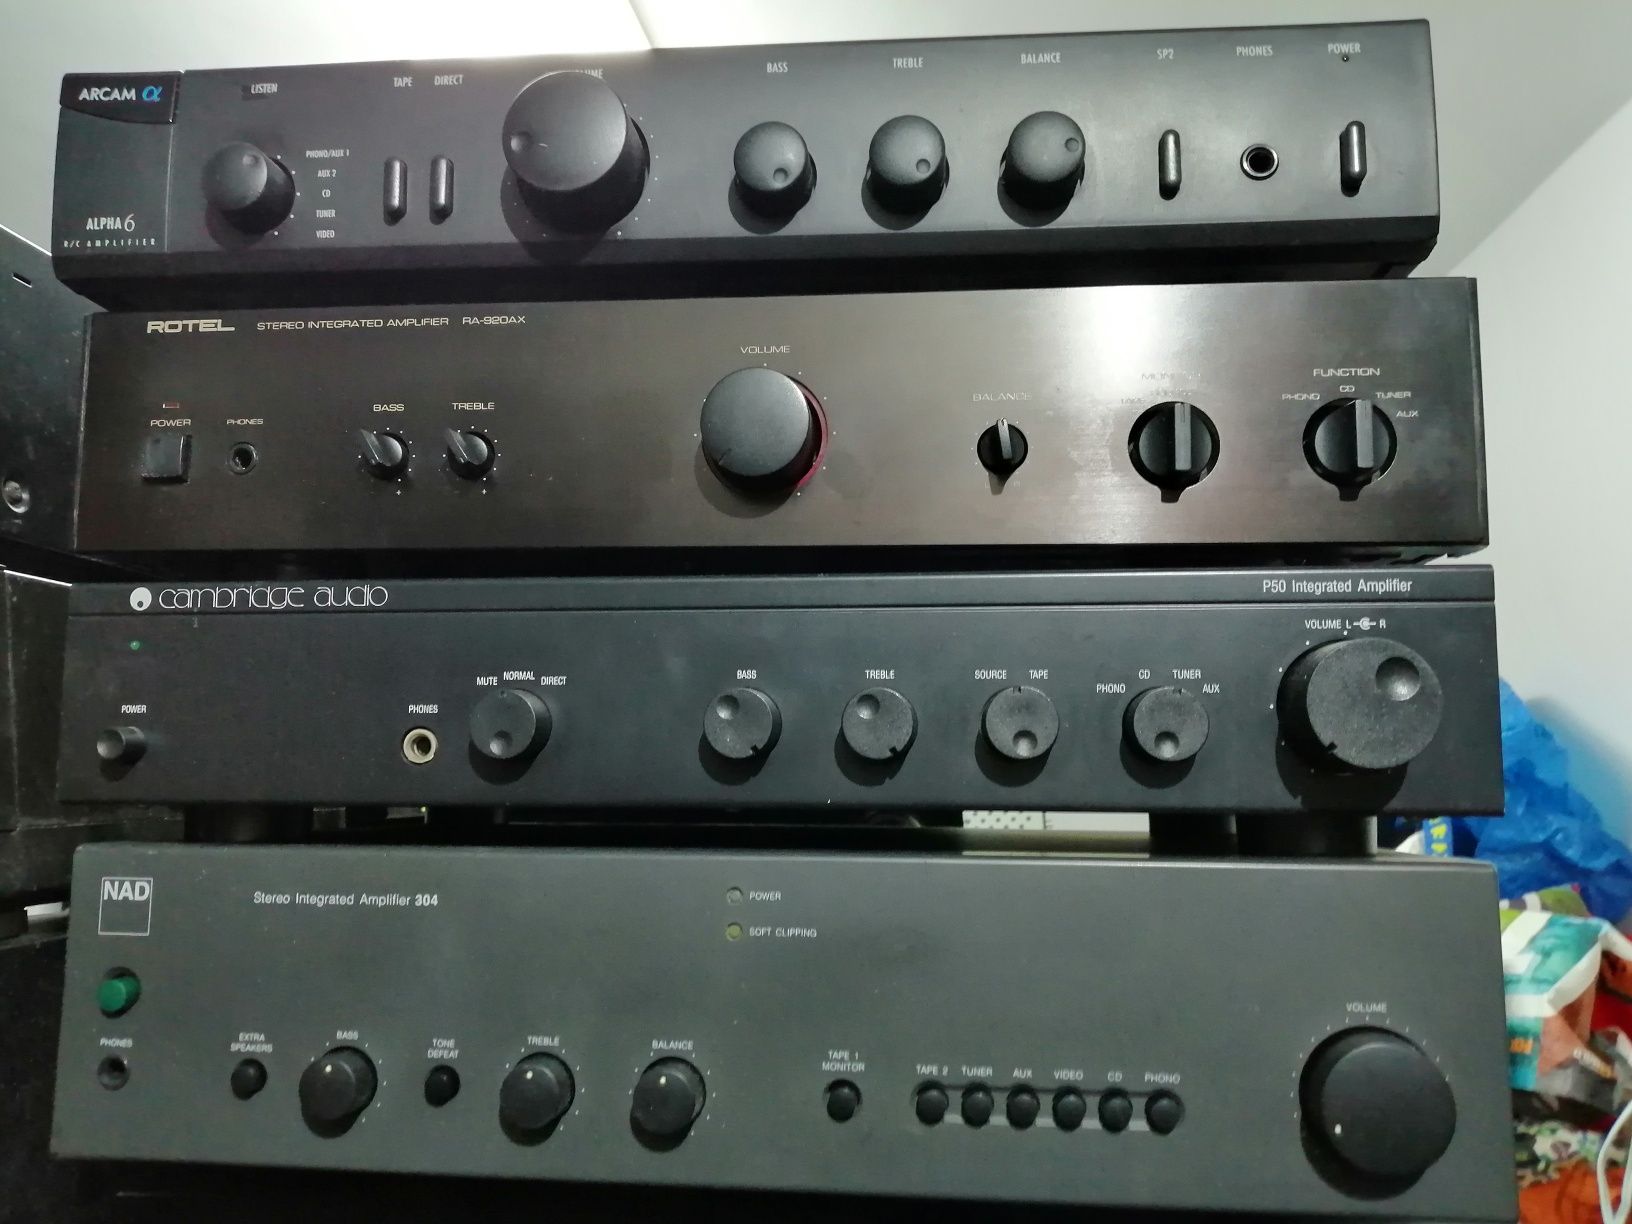 Vários amplificadores de boas marcas Sony Yamaha technics nad Denon ro